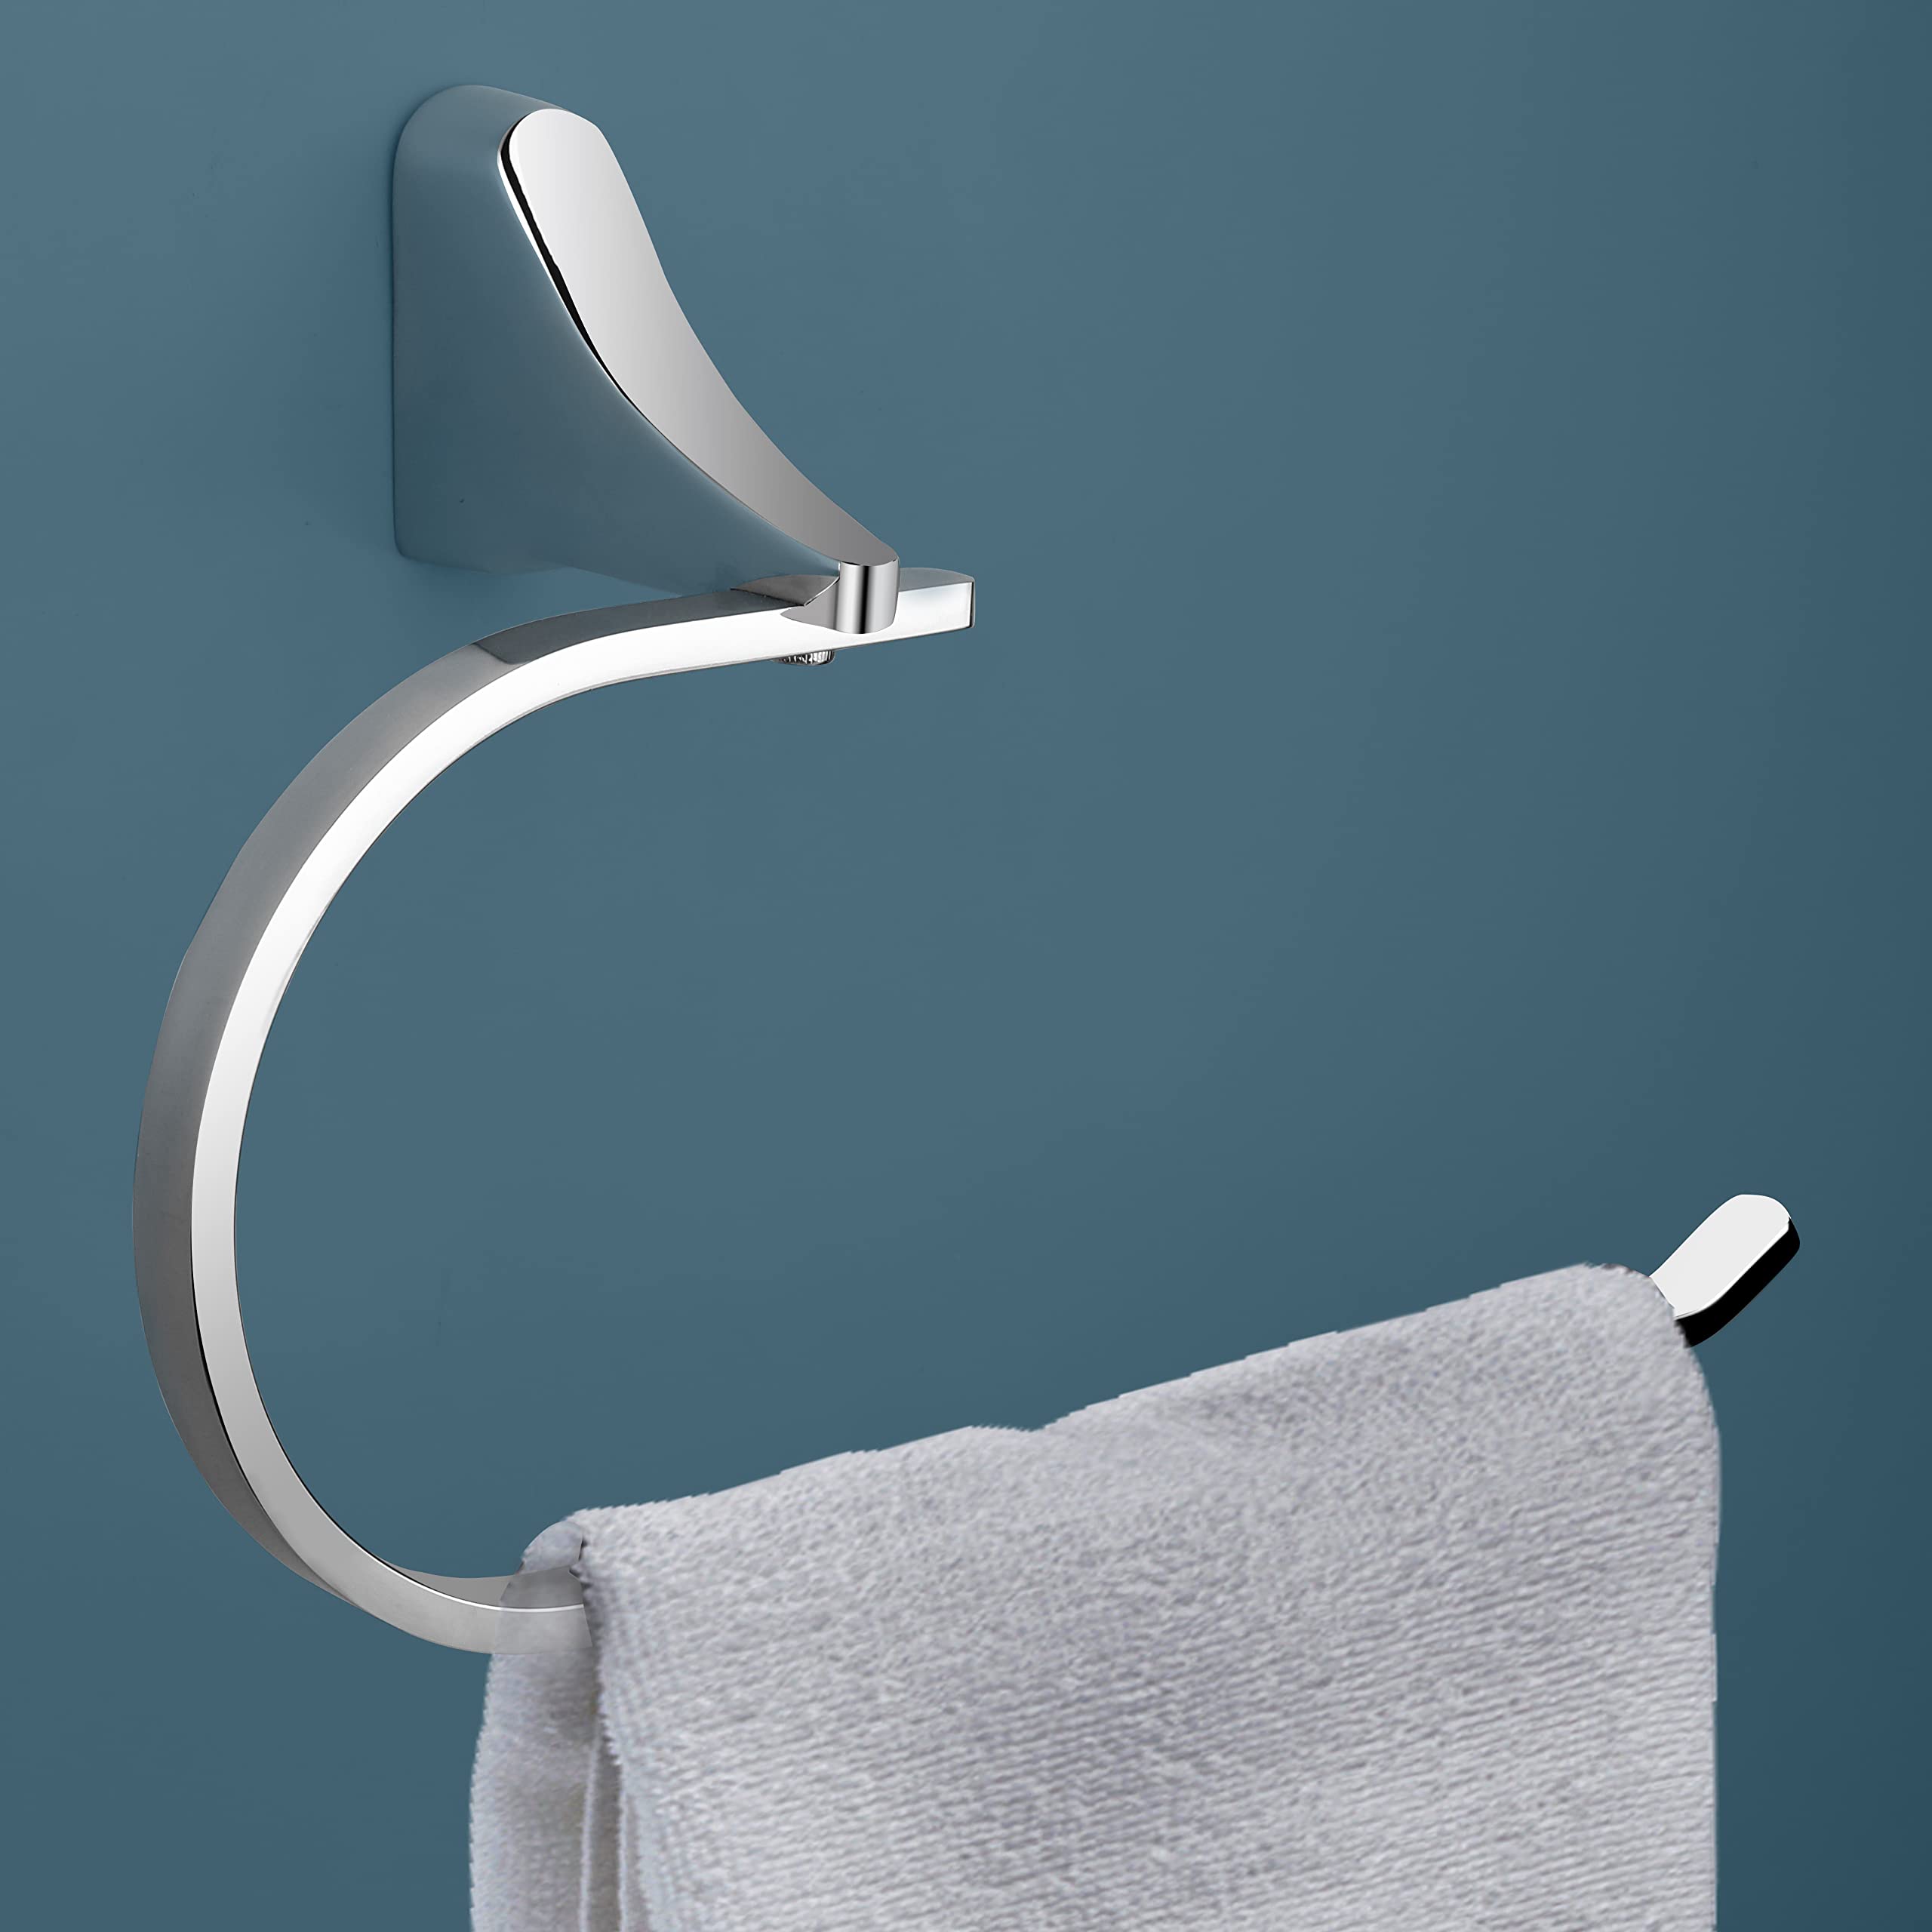 Plantex Smooth Brass Napkin Holder for Wash Basin/Kitchen/Bathroom Accessories Hand Towel Holder (UN-1733)